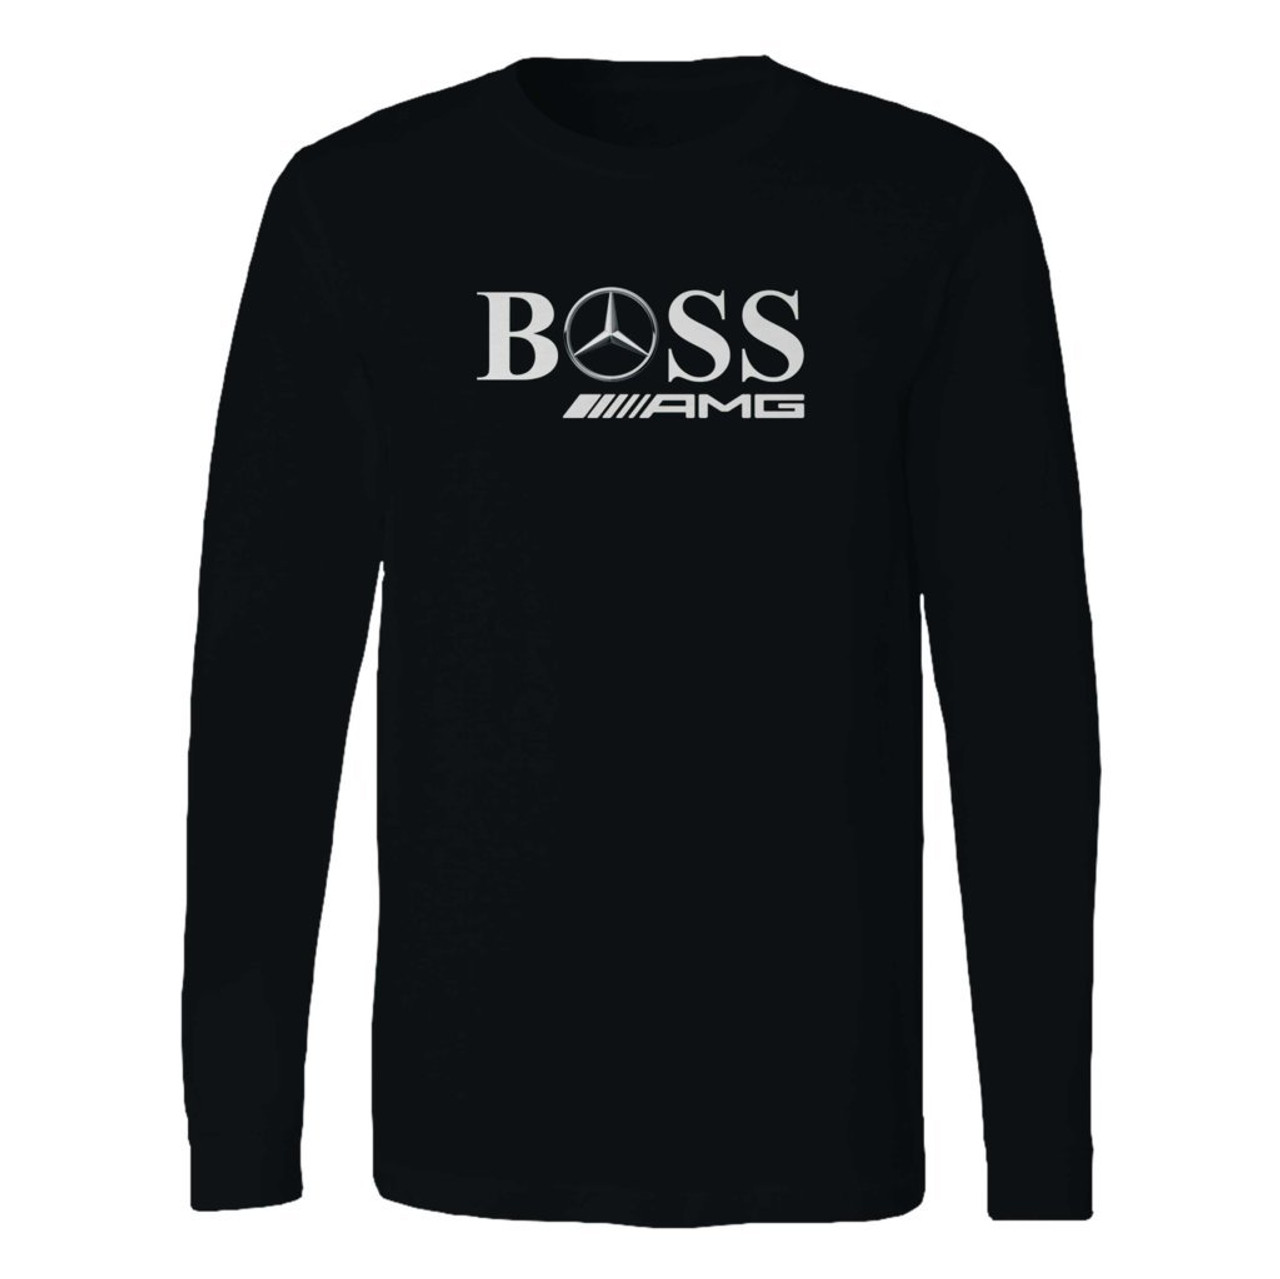 boss mercedes t shirt